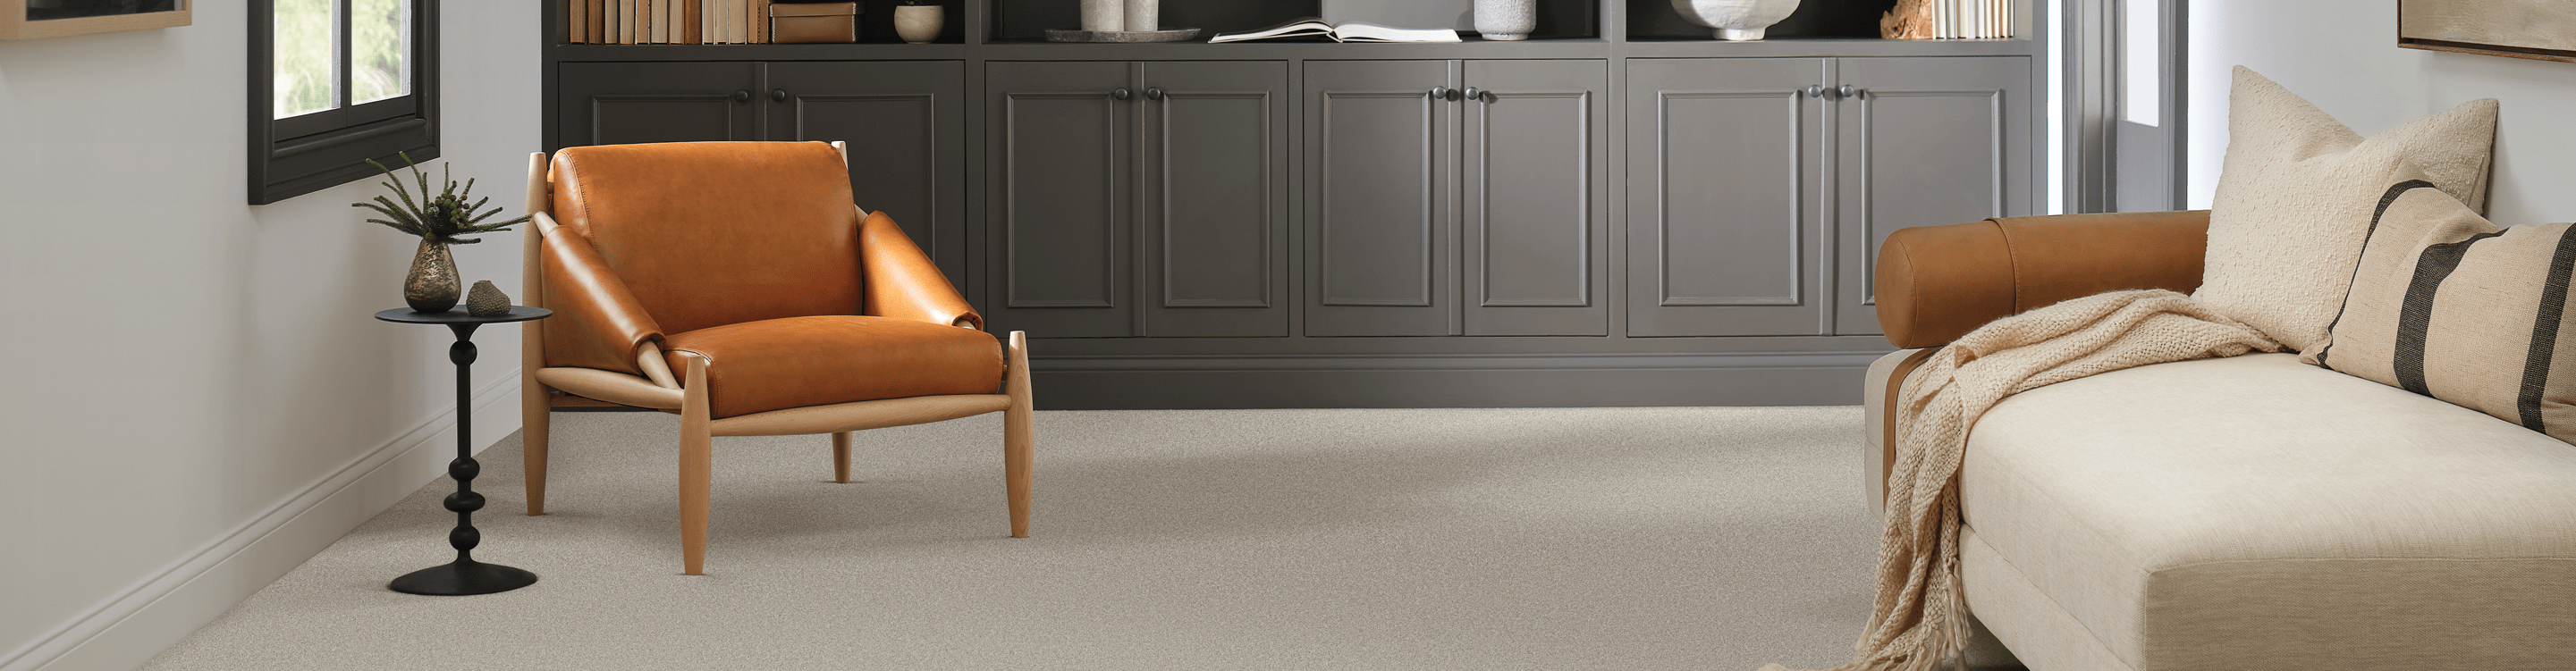 Beige carpet with orange Mid Century Modern chair. 